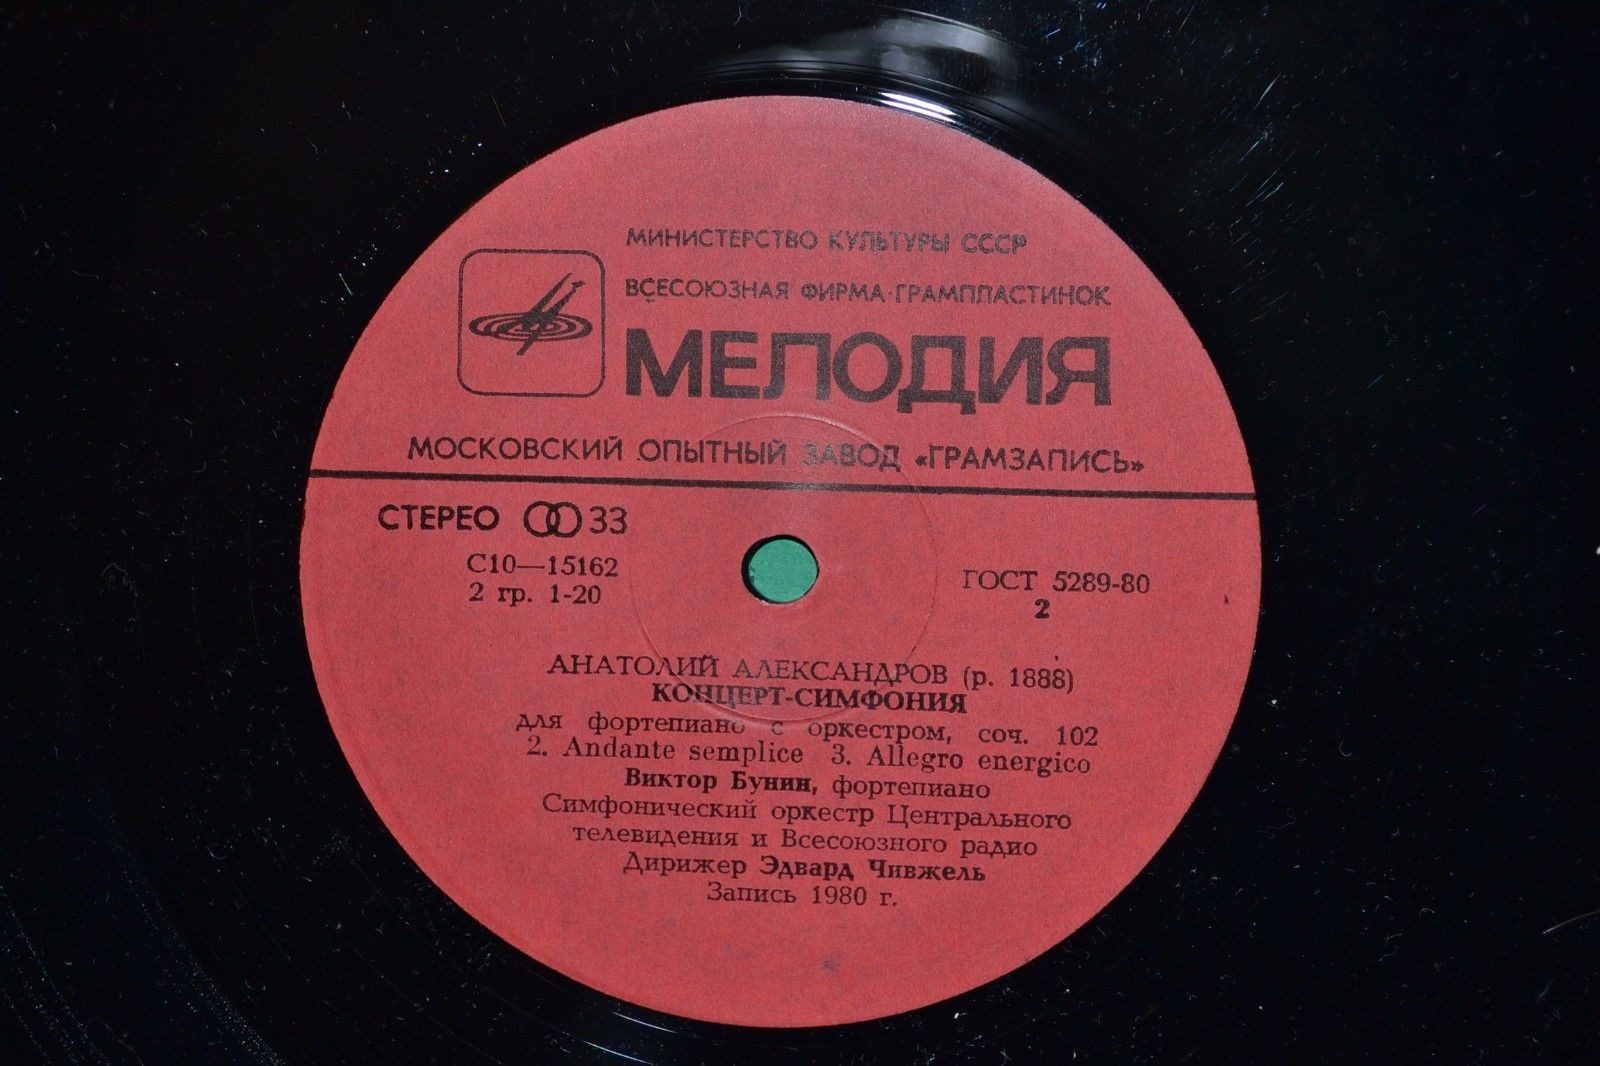 Ан. АЛЕКСАНДРОВ (1888-1982). Концерт-симфония для фортепиано с оркестром, соч. 102